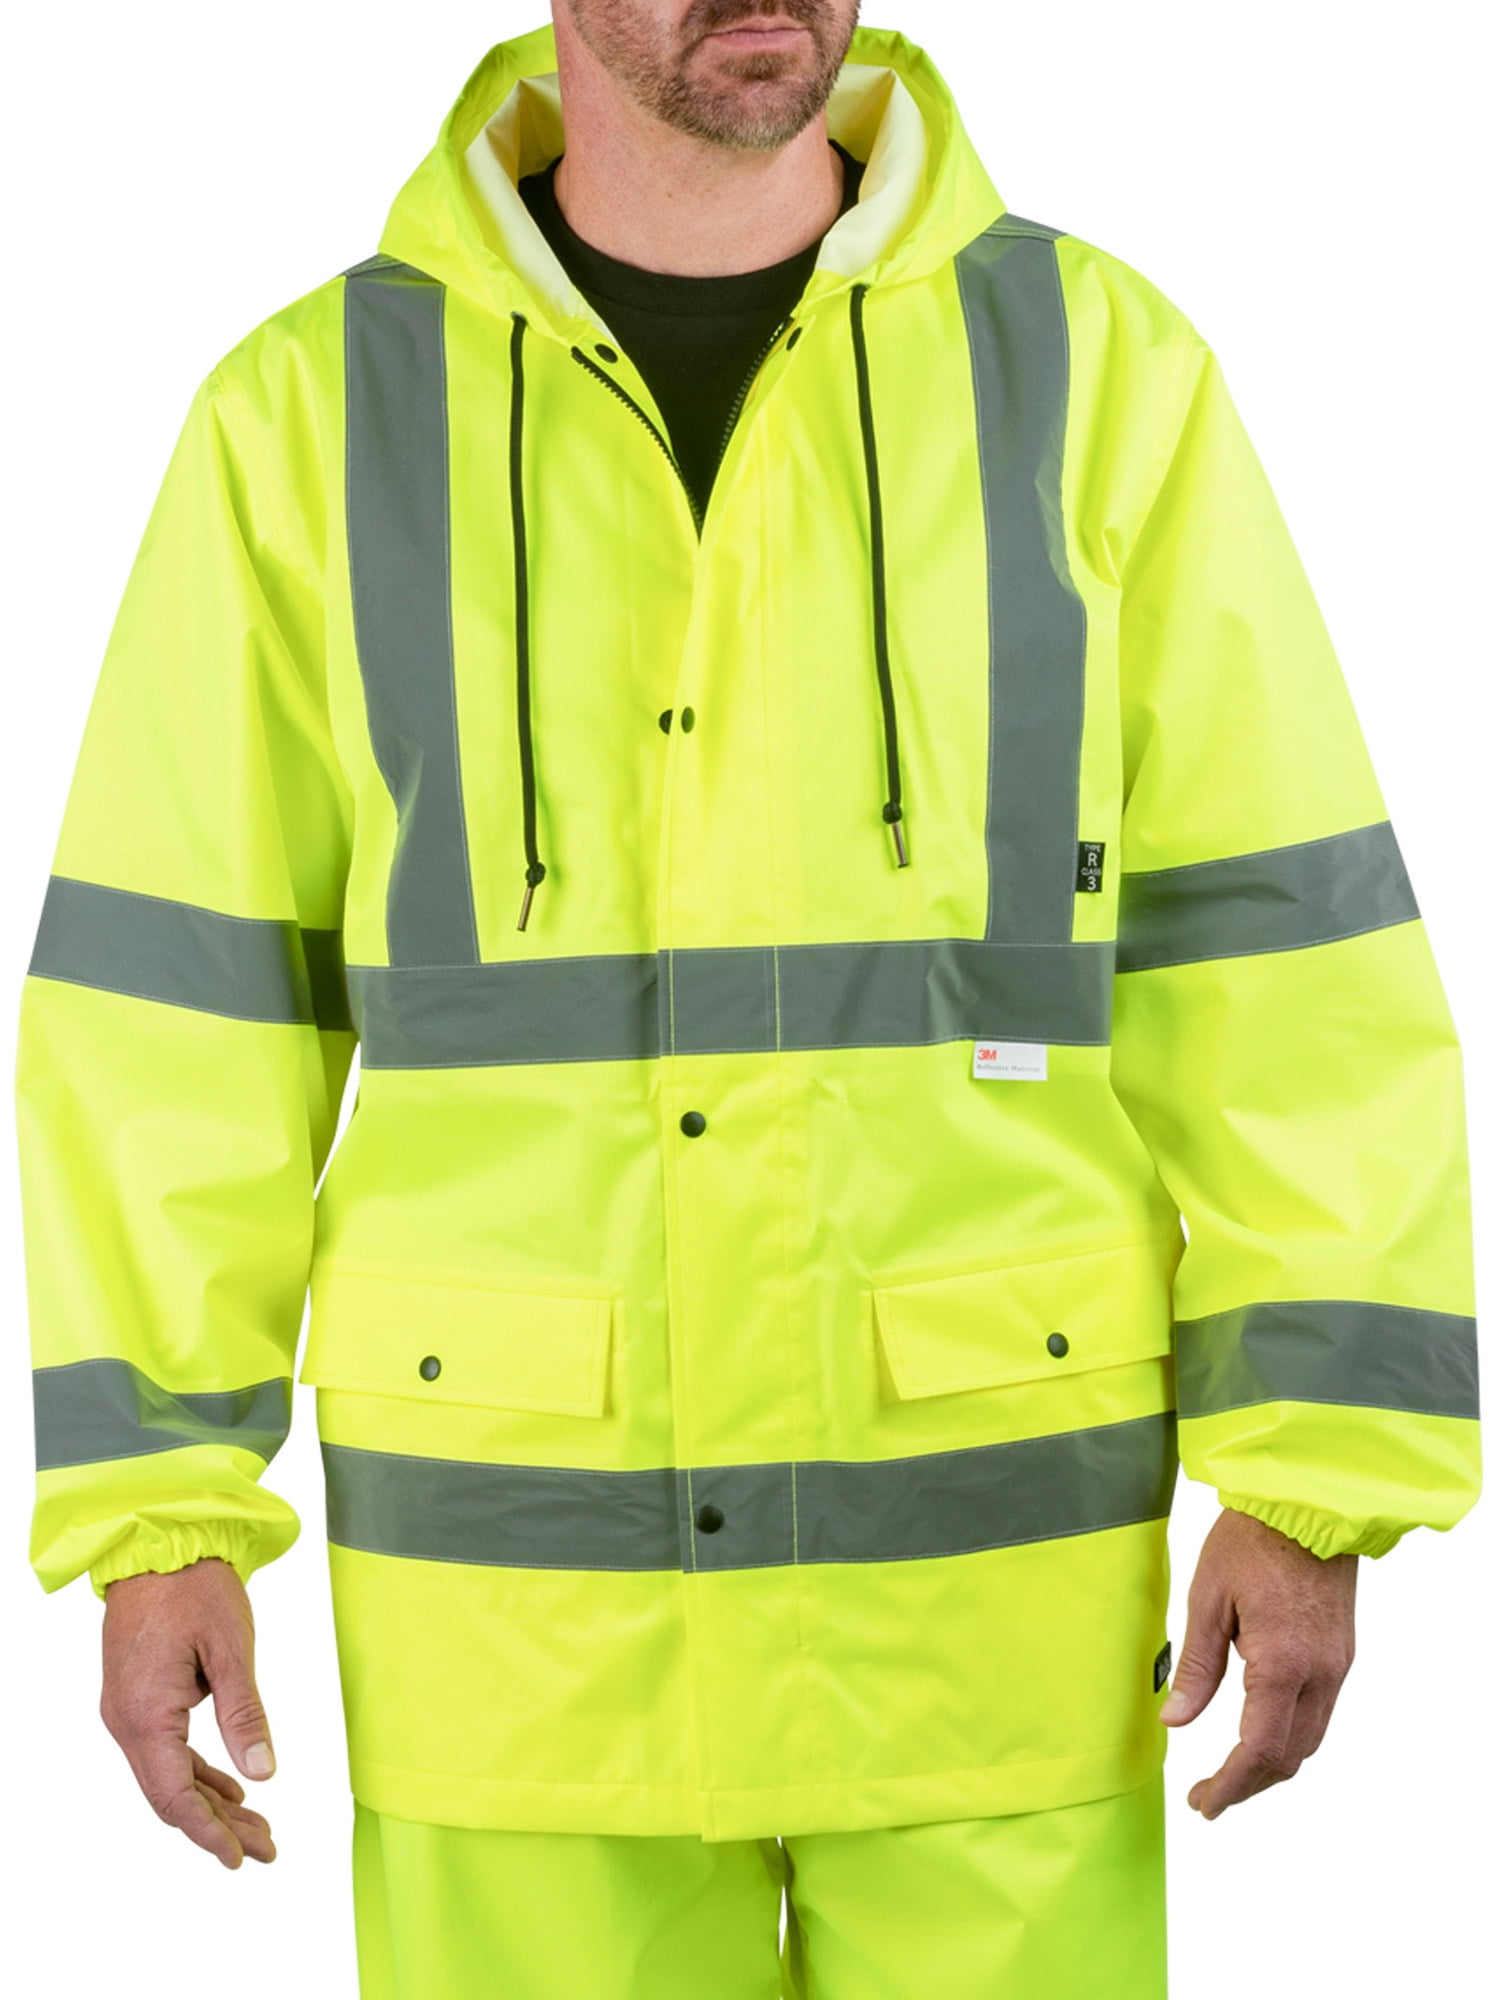 Pulsar Hi Viz Naranja trabajo PPE Pantalones Tamaño 38 Reg nuevos gastos de envío gratis 